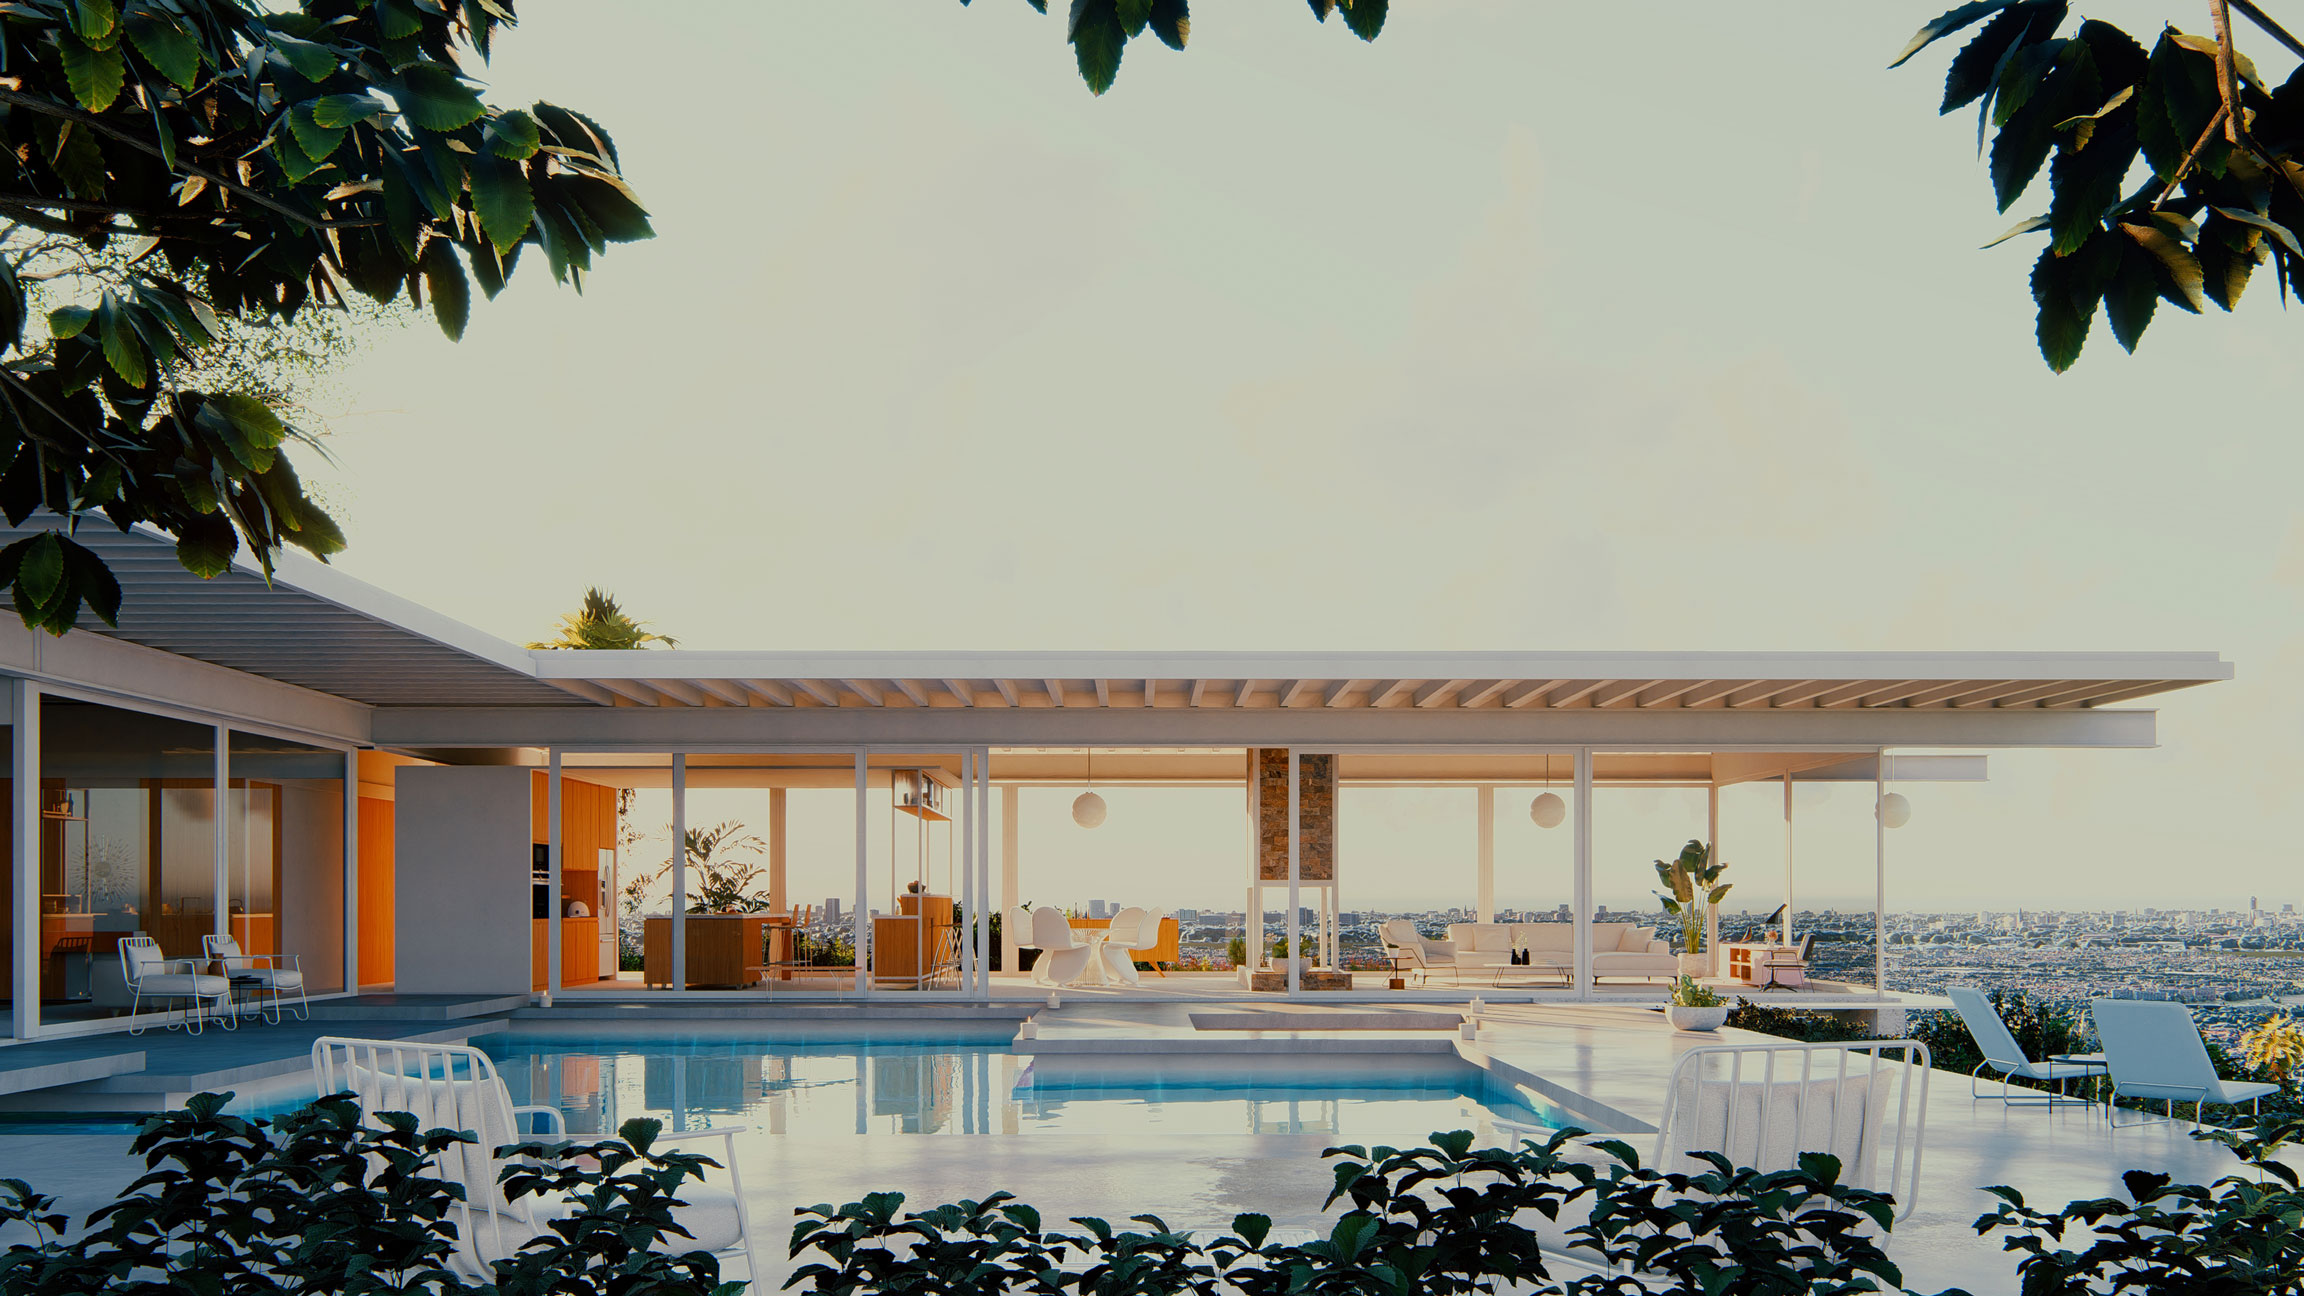 Stahlhaus - Außenansicht am Morgen mit Blick auf den Pool und das Poolhaus